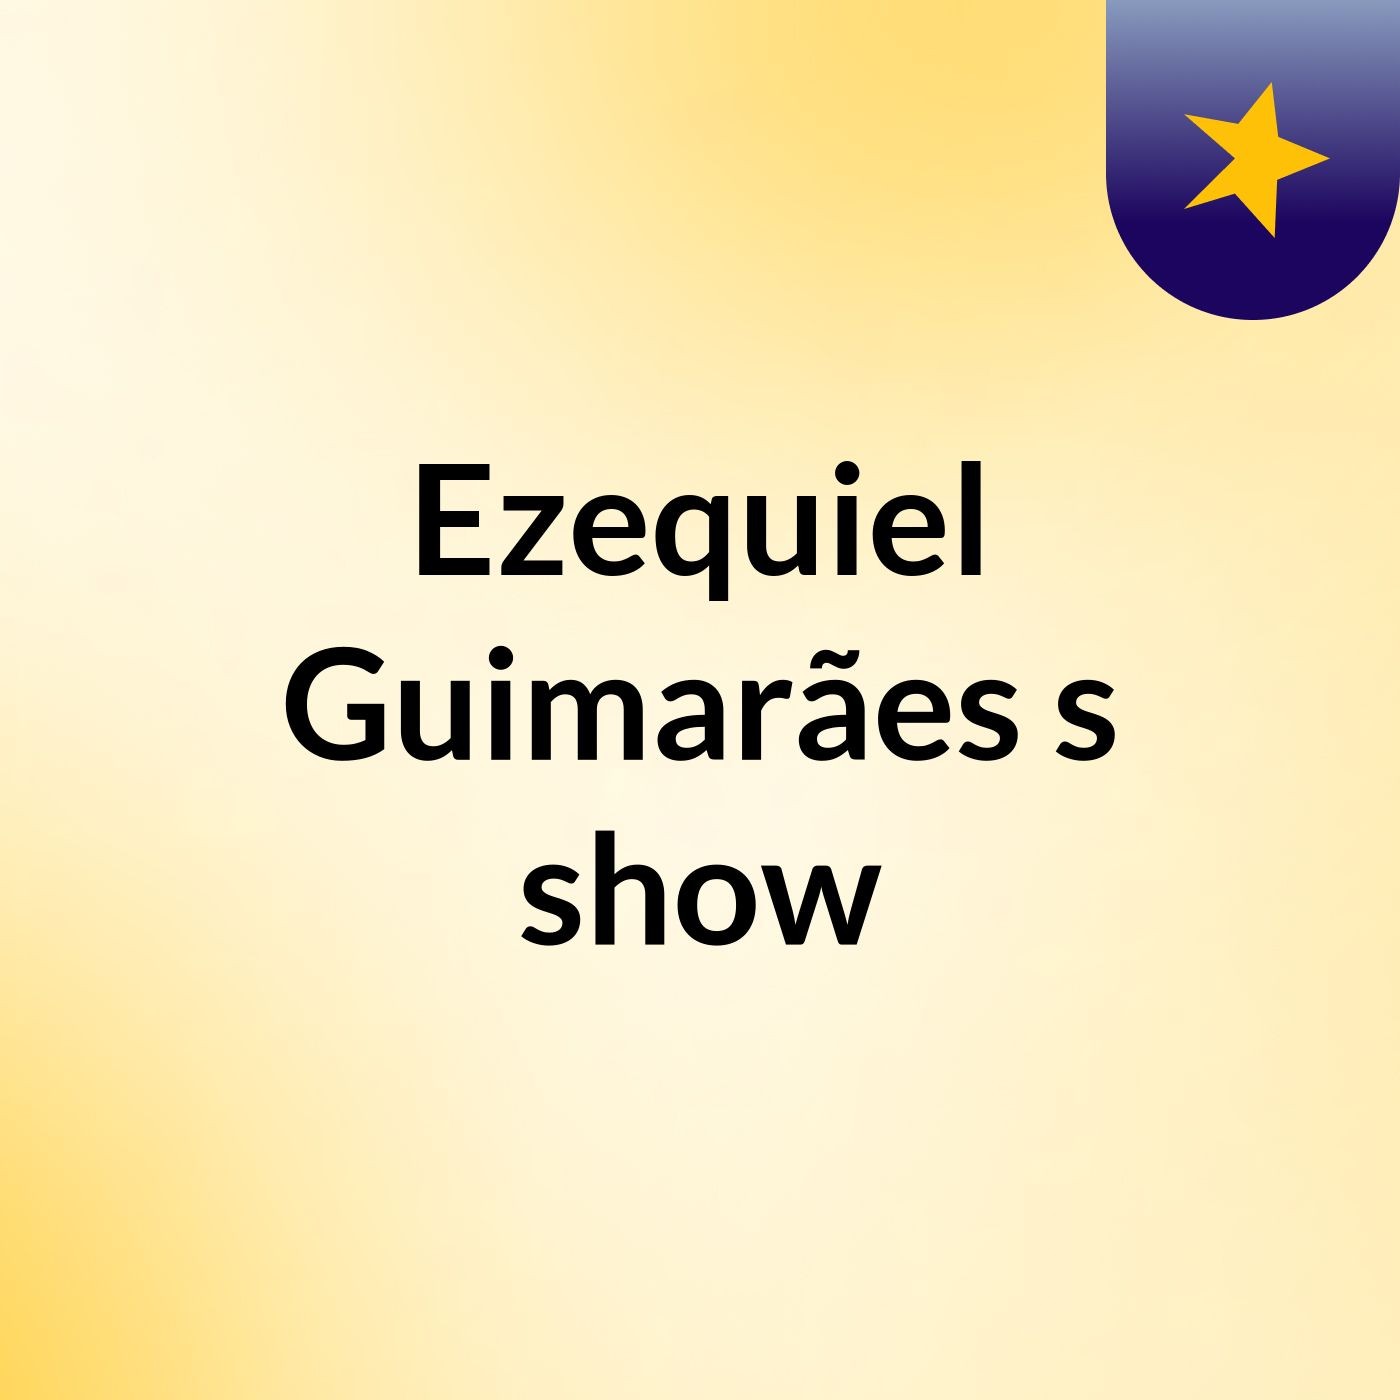 Ezequiel Guimarães's show